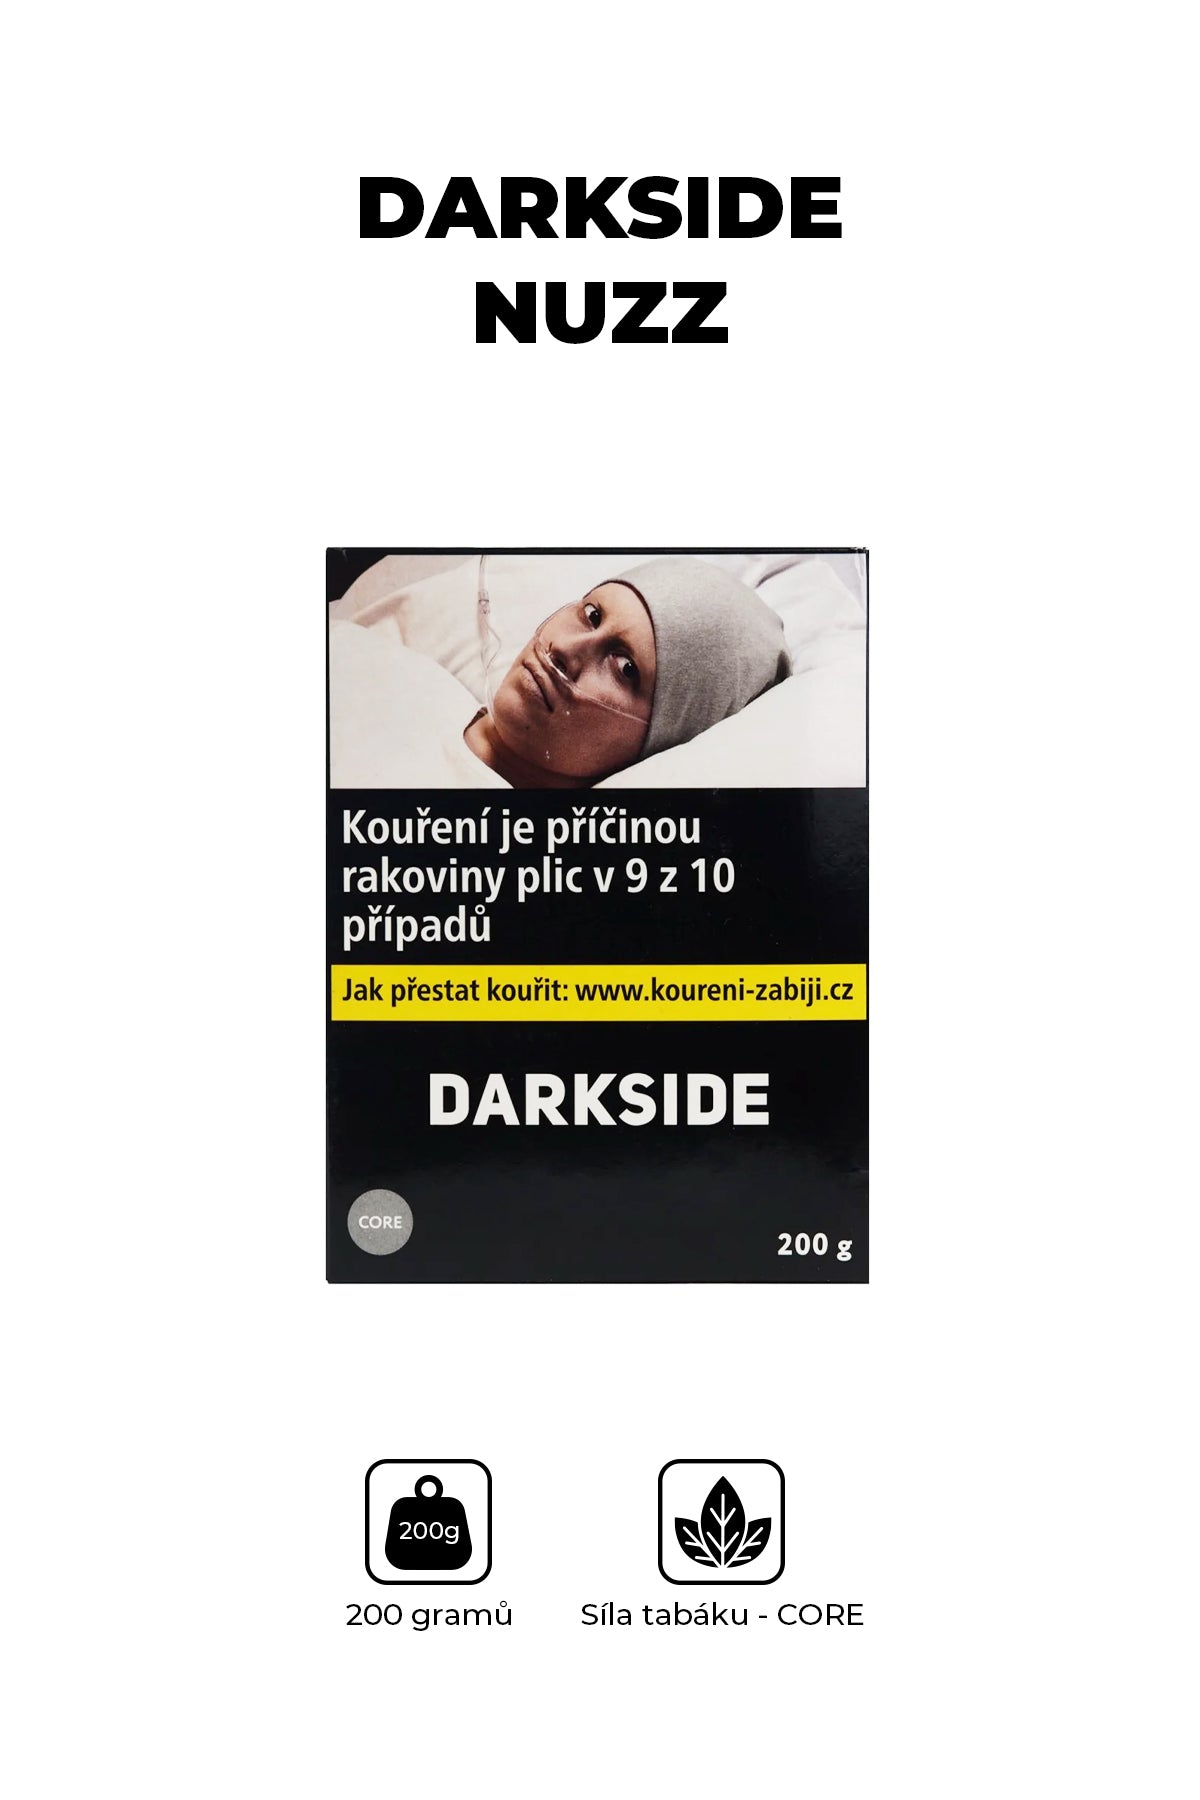 Tabák - Darkside Core 200g - Nuzz